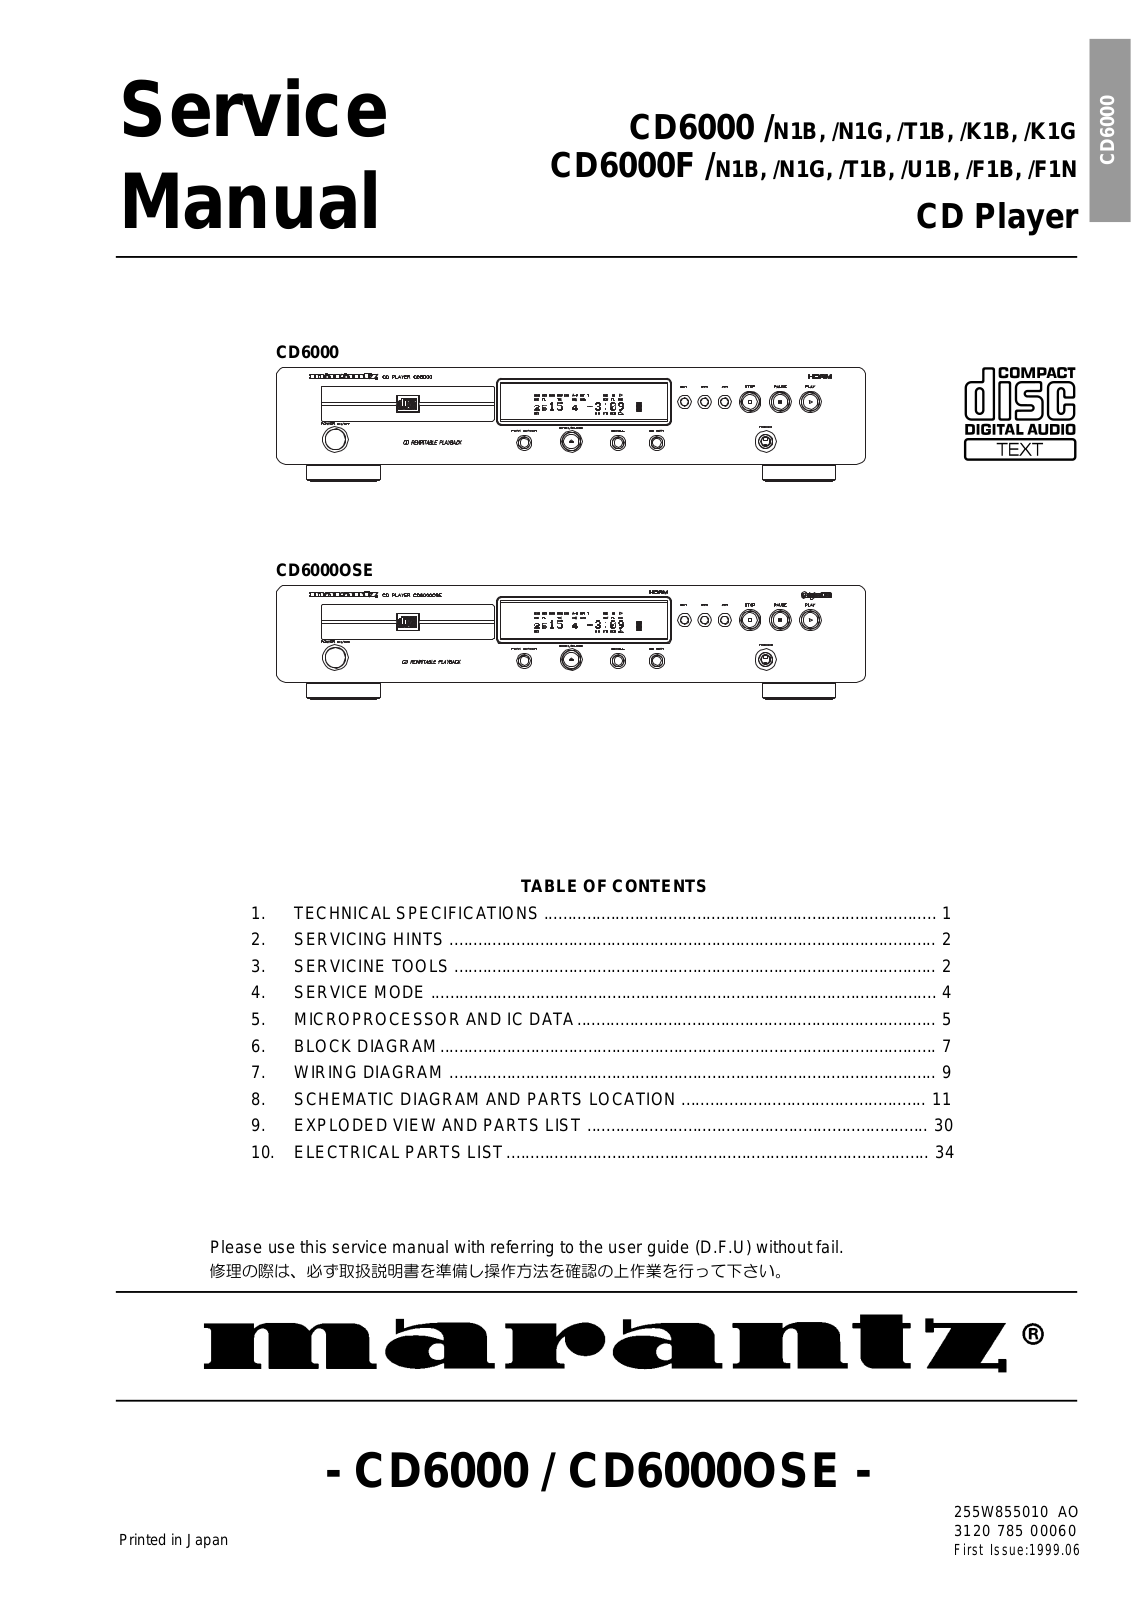 Marantz CD-6000, CD-6000-OSE, CD-6000-F Service Manual